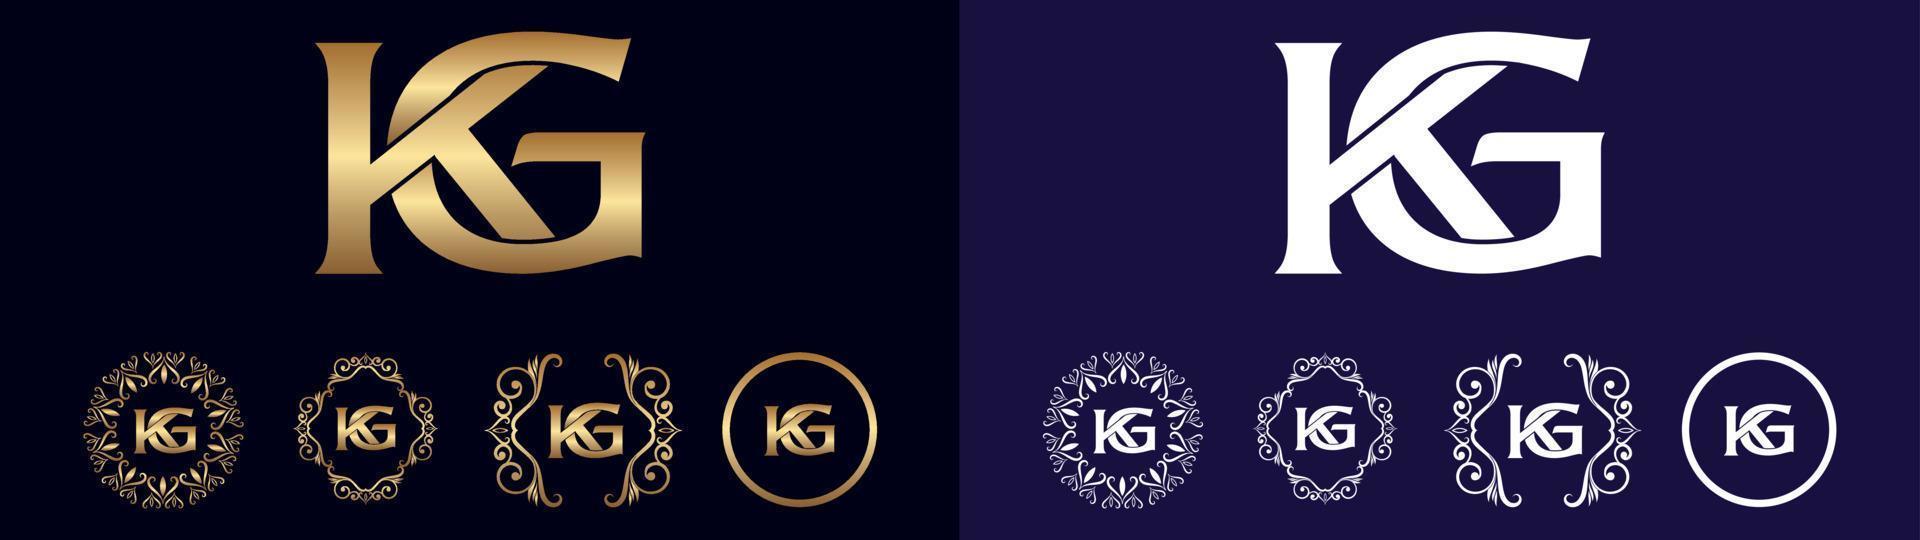 aziendale marca logo kg design vettore